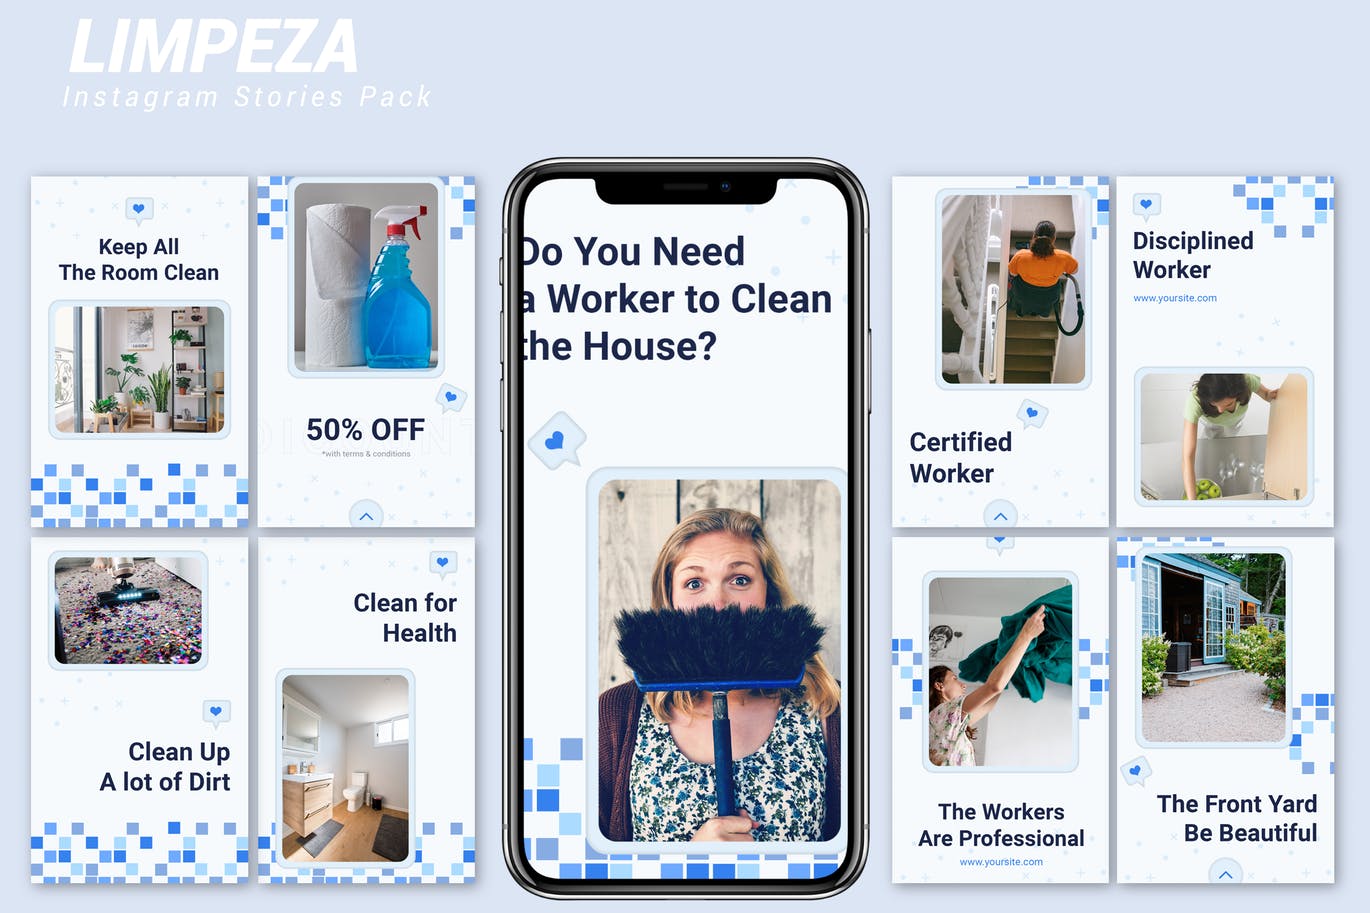 蓝色方块点缀设计风格Instagram品牌故事模板素材库精选 Limpeza – Instagram Story Pack插图